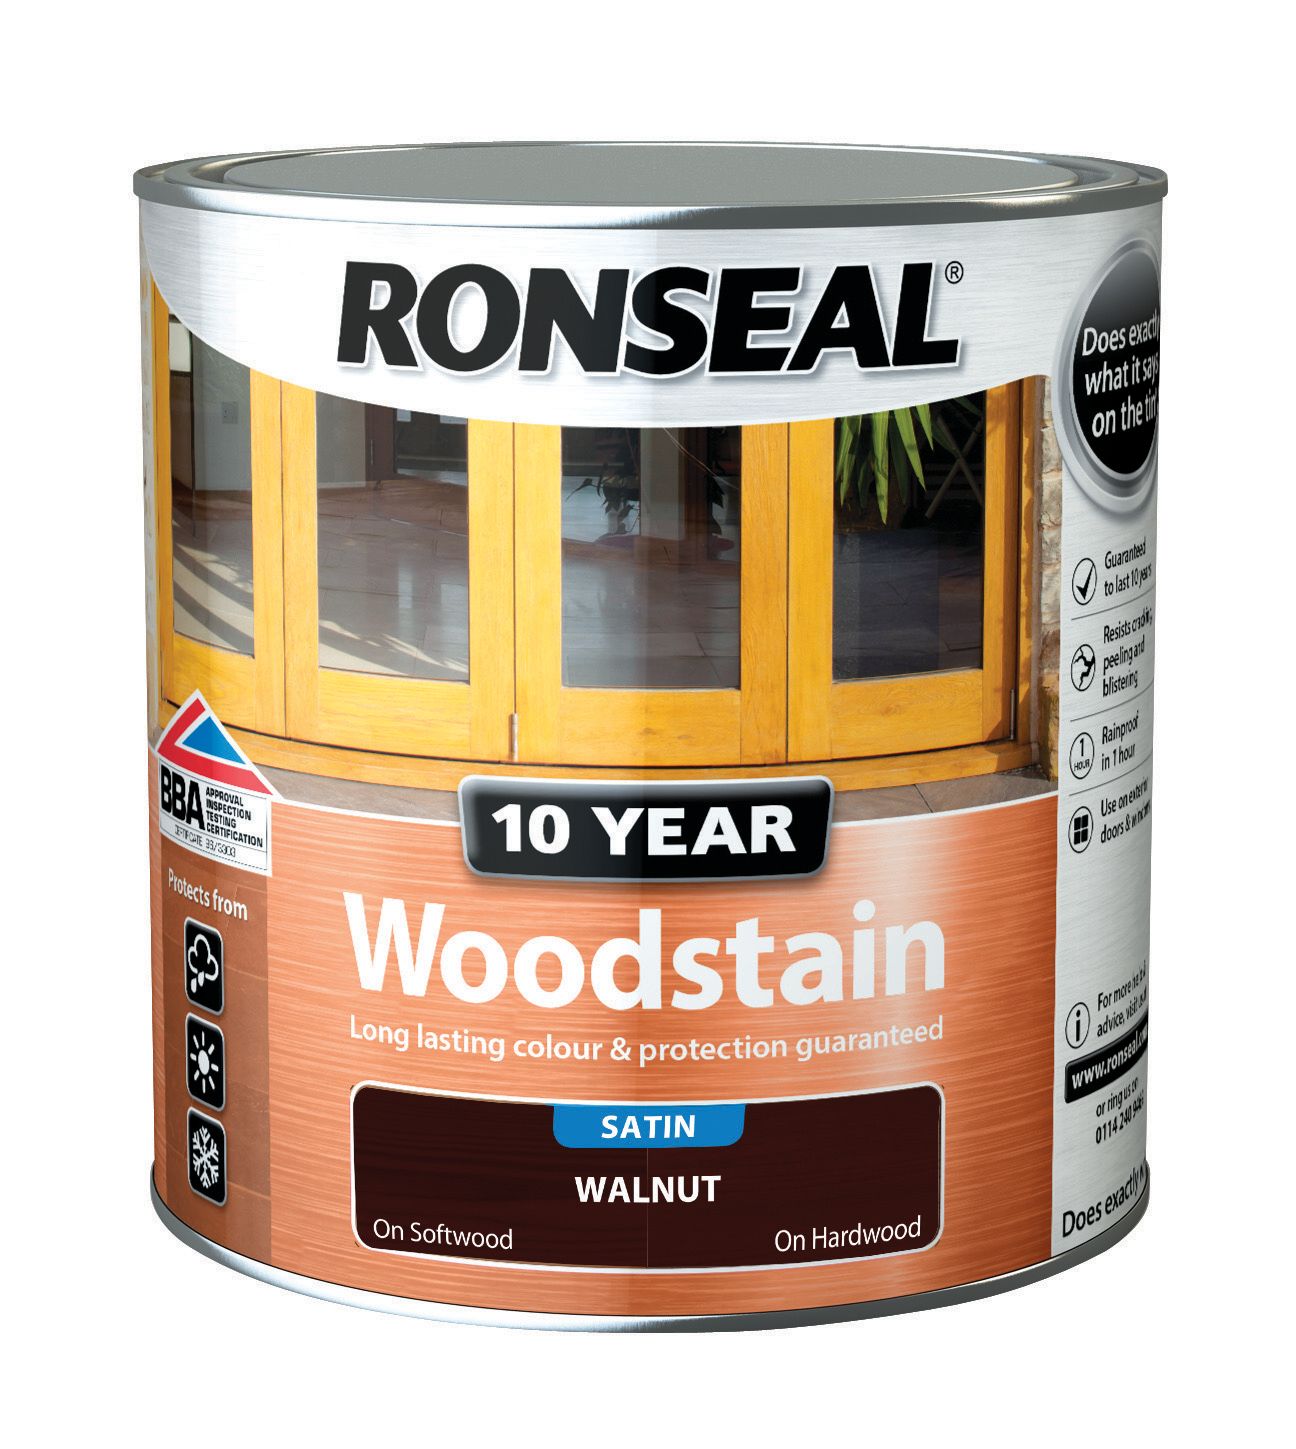 Ronseal 10 Year Woodstain - Walnut - 2.5L